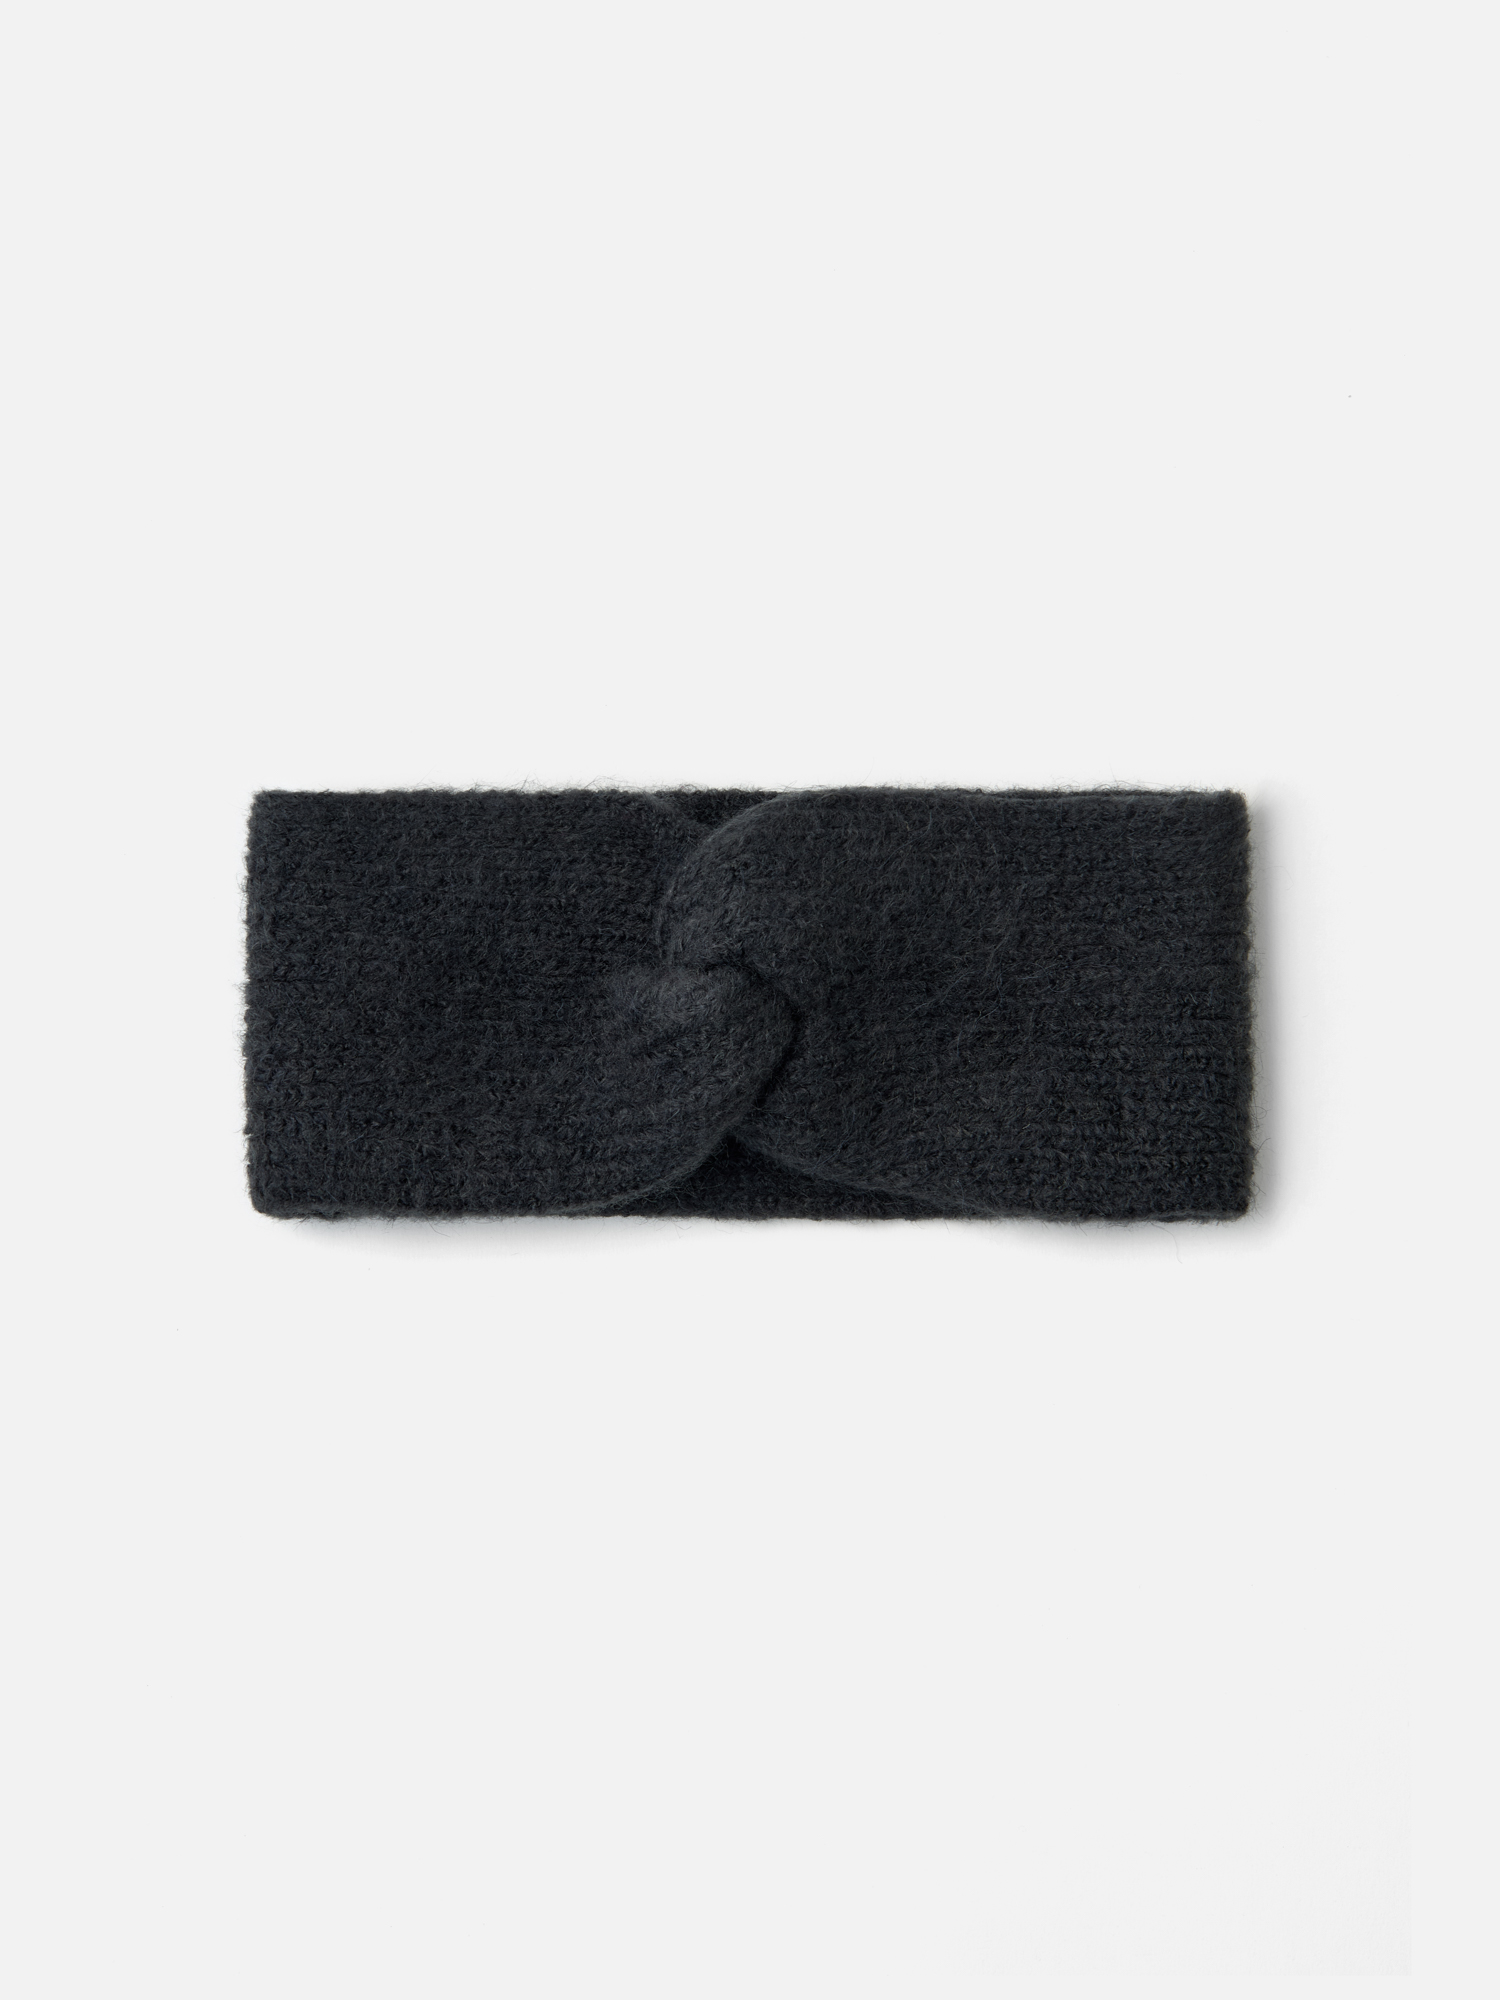 Повязка на голову H&M для девочек, серый-001, размер 134/170, 1098109001 повязка труба 2 в 1 onlytop шарф шапка флис серый